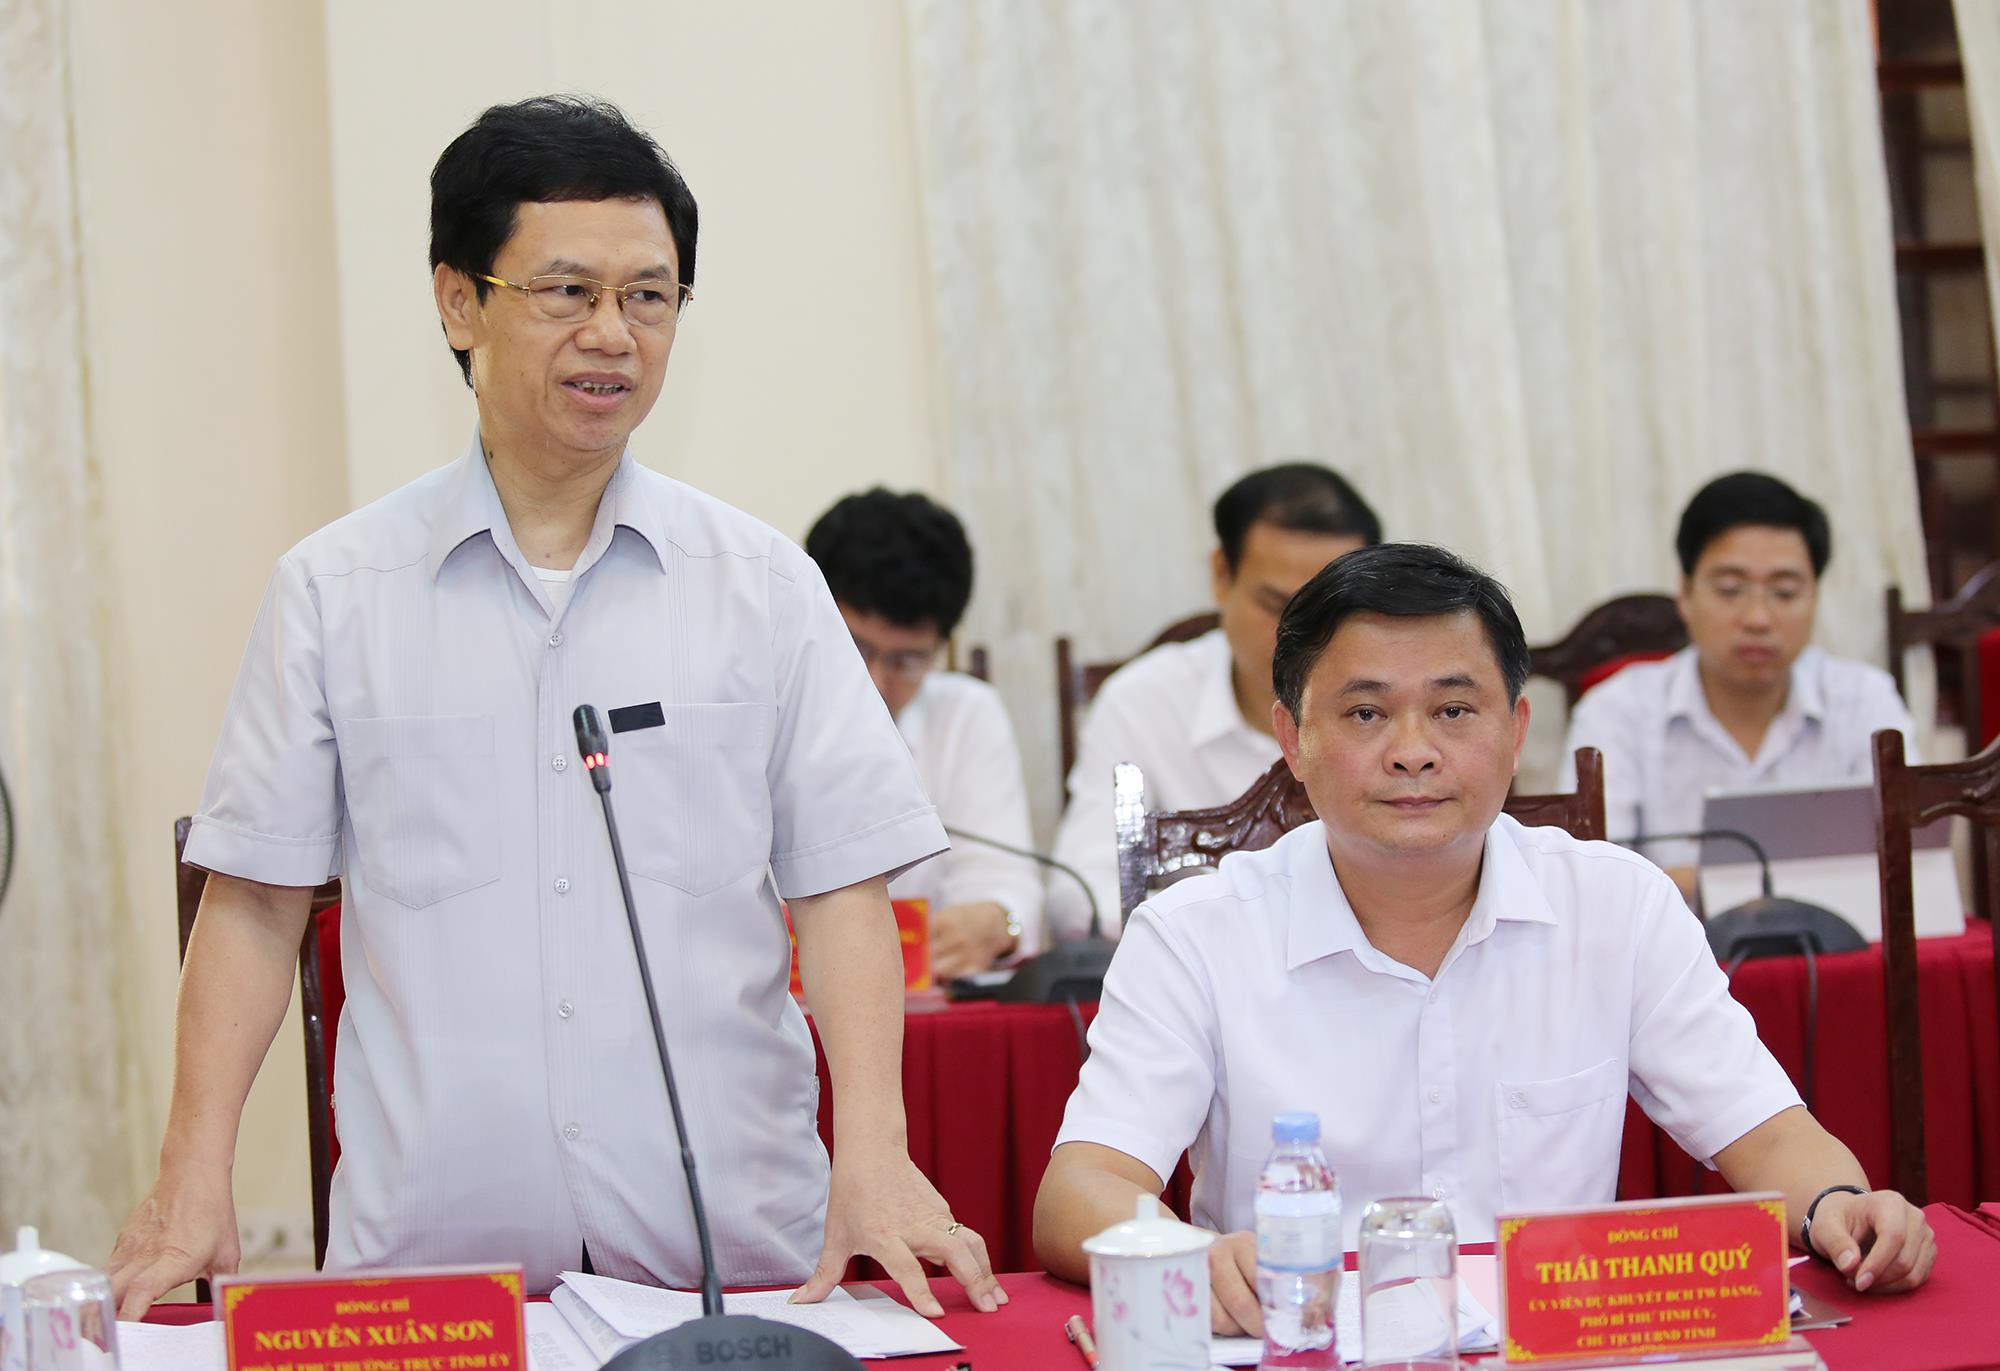 Đồng chí Nguyễn Xuân Sơn, Phó Bí thư Thường trực Tỉnh ủy, Chủ tịch HĐND tỉnh. Ảnh: Đức Anh